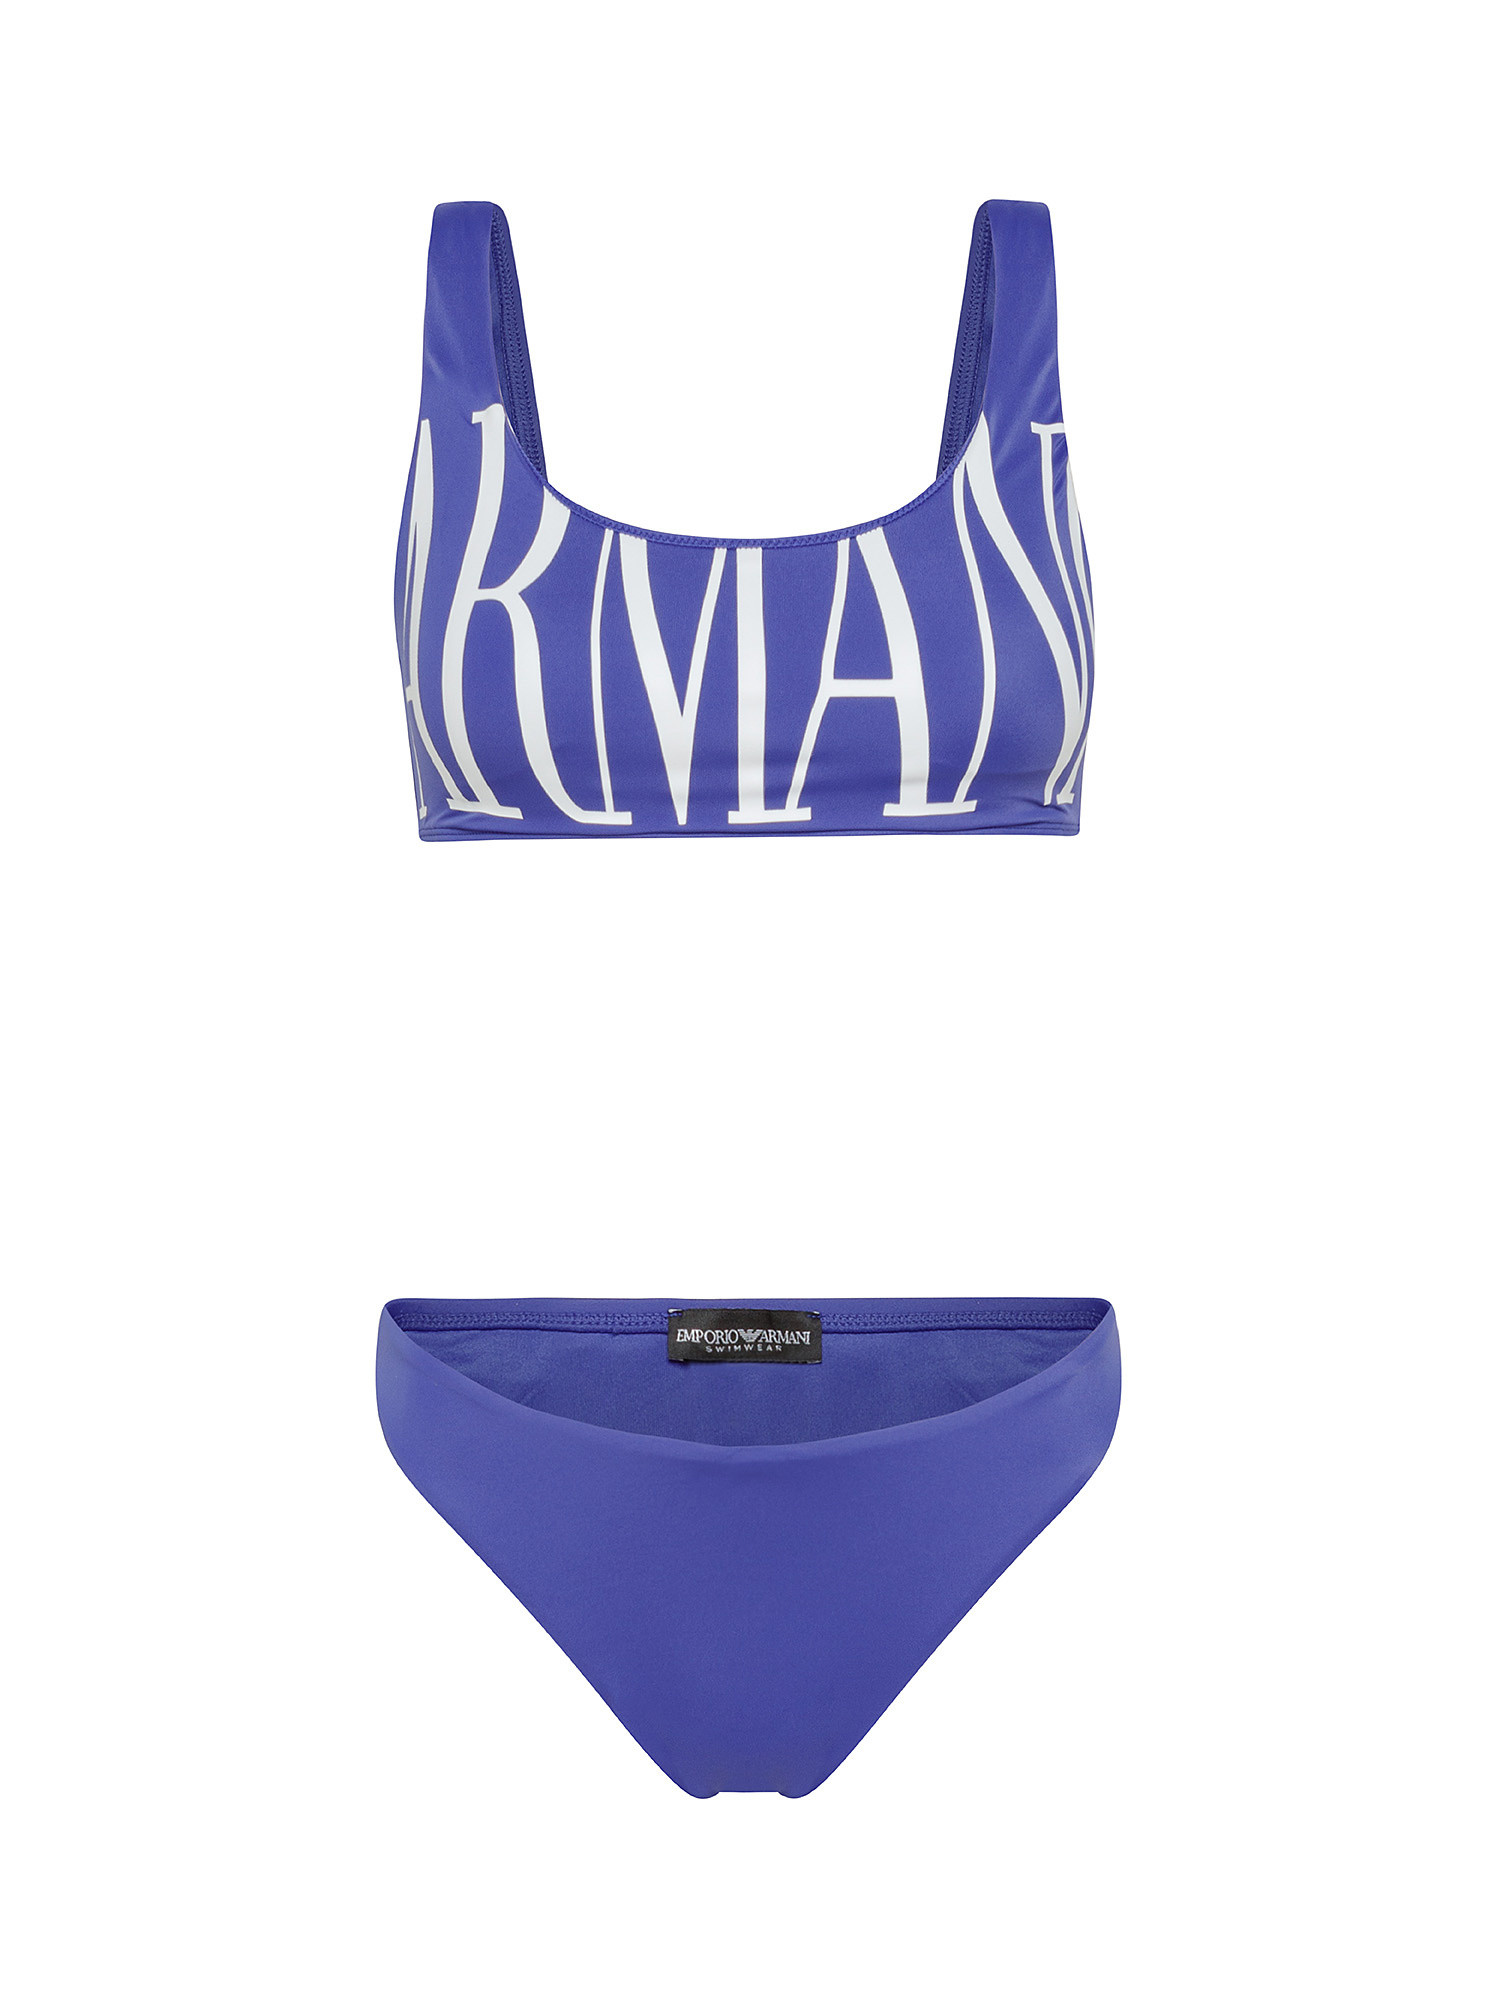 Bikini con top stampa logo, Blu royal, large image number 0